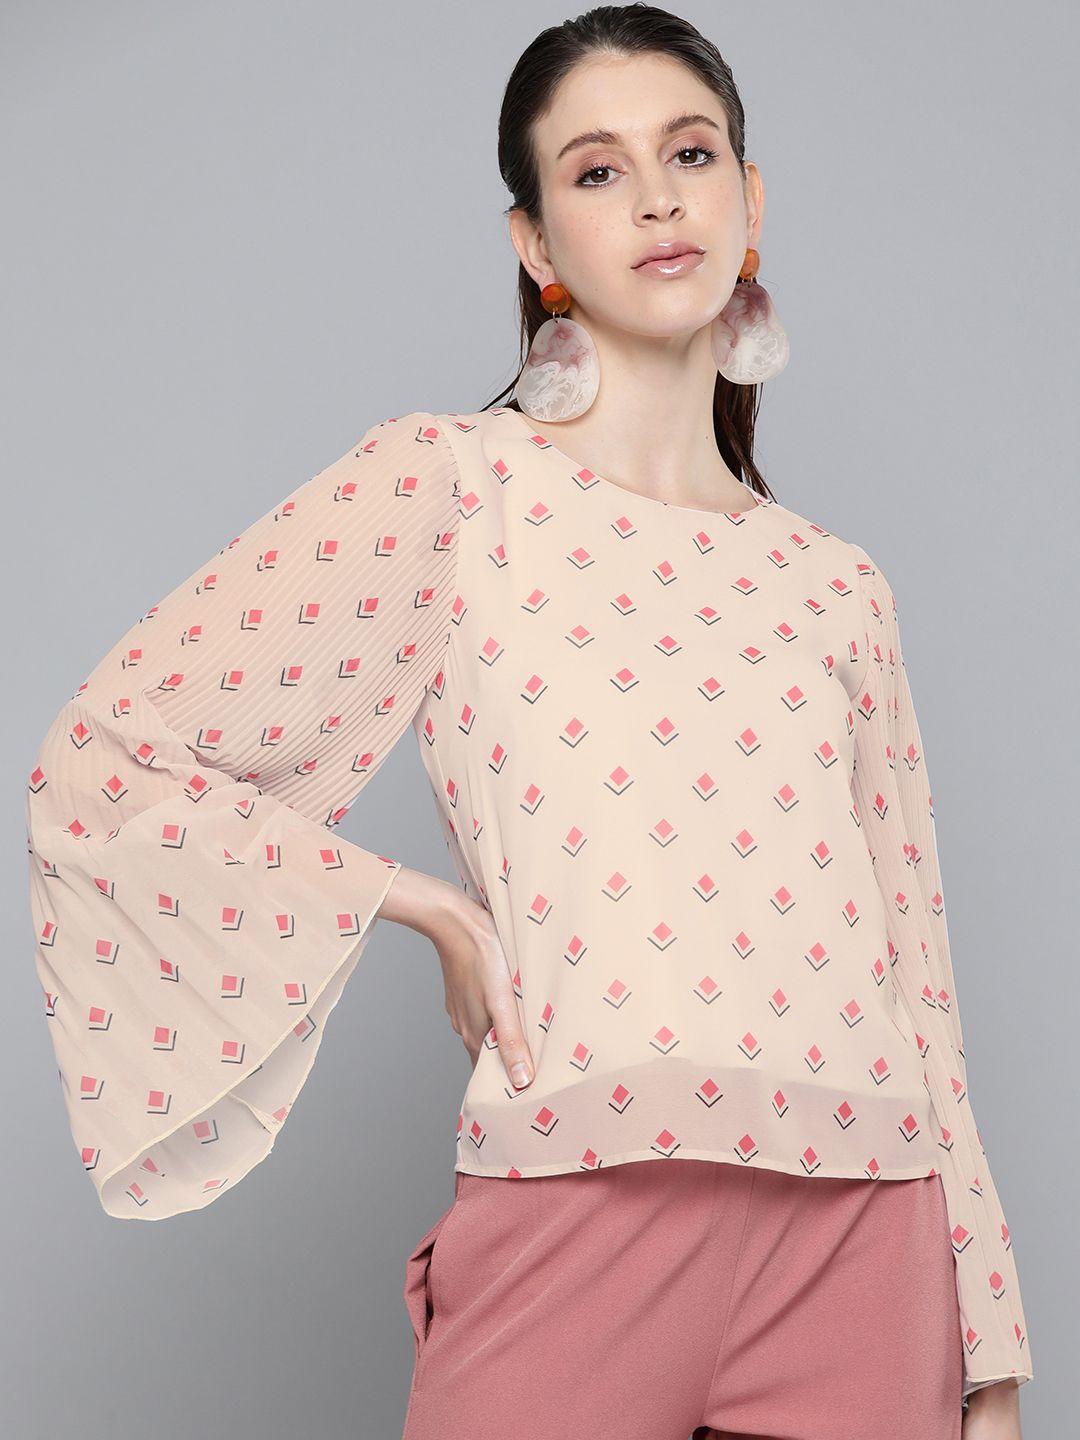 sassafras beige & pink geometric printed bell sleeves regular top